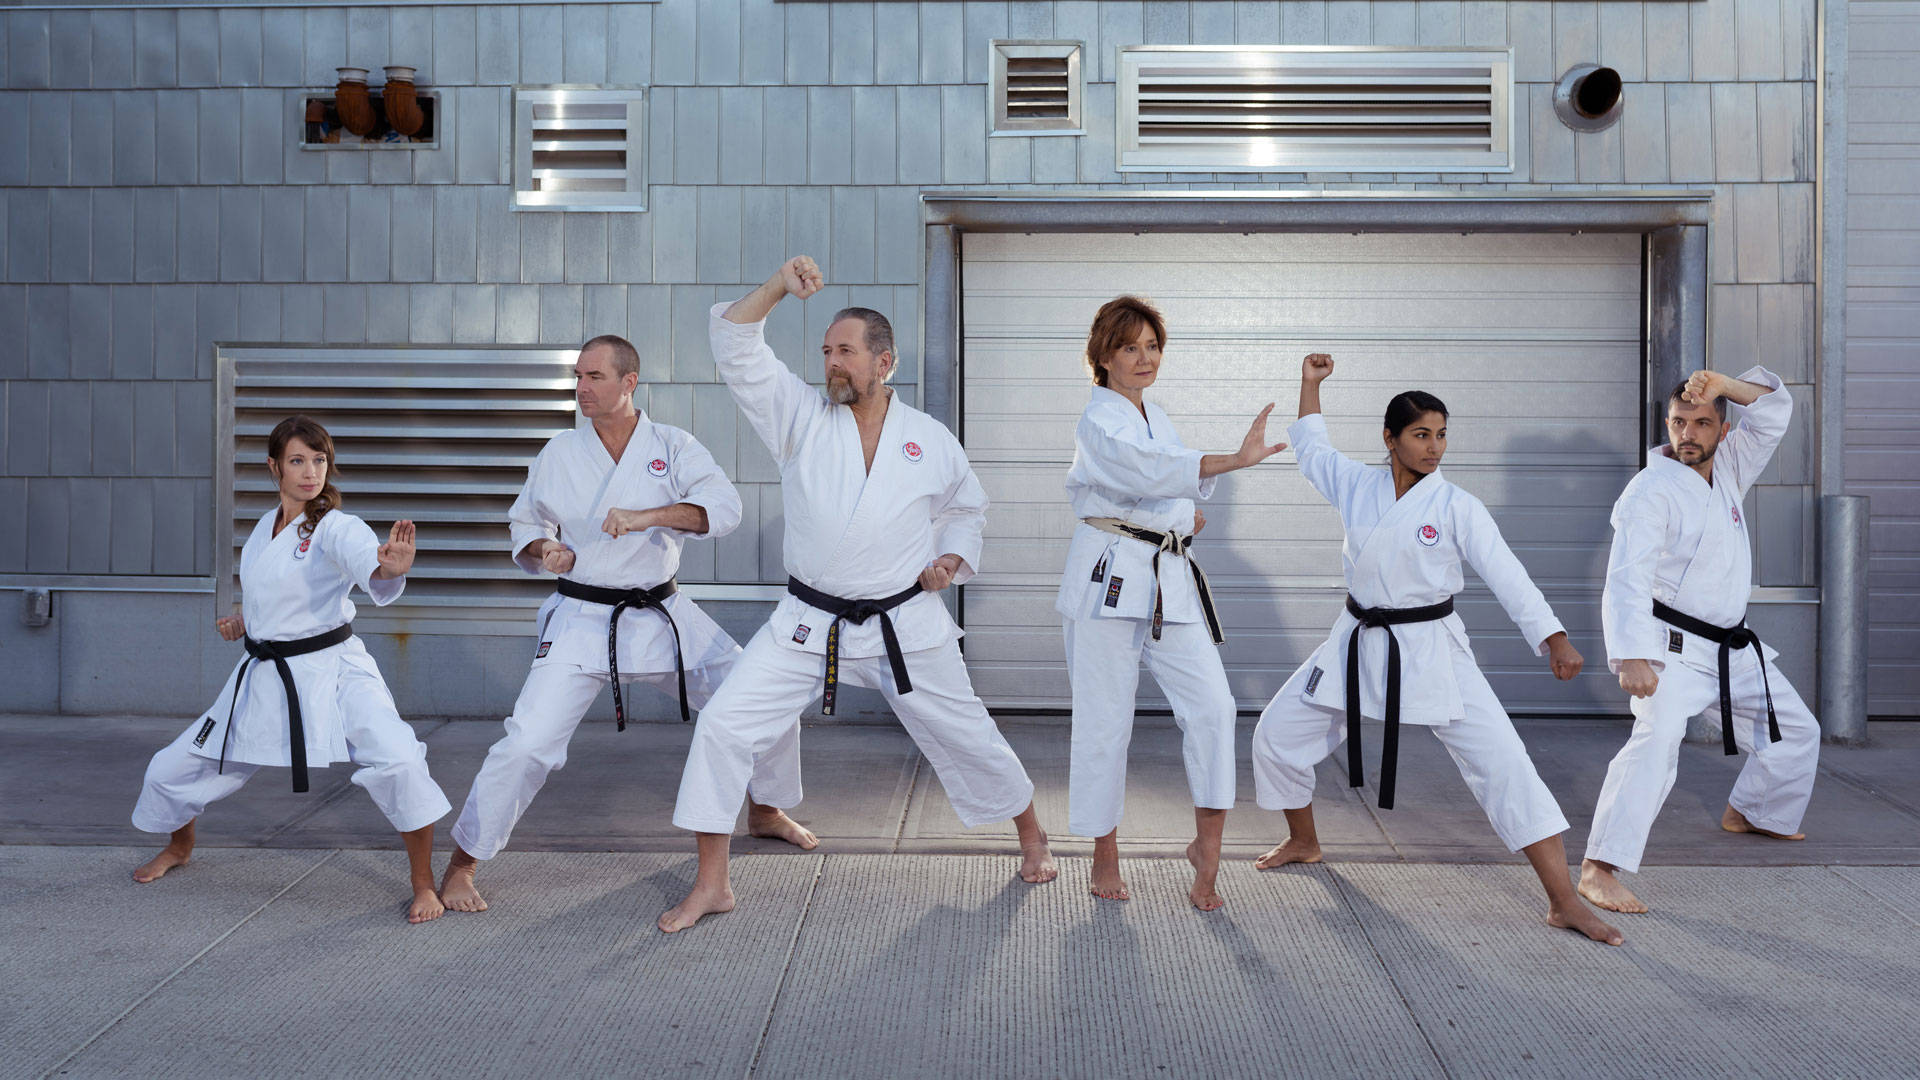 Personasde Karate Haciendo Poses Fondo de pantalla